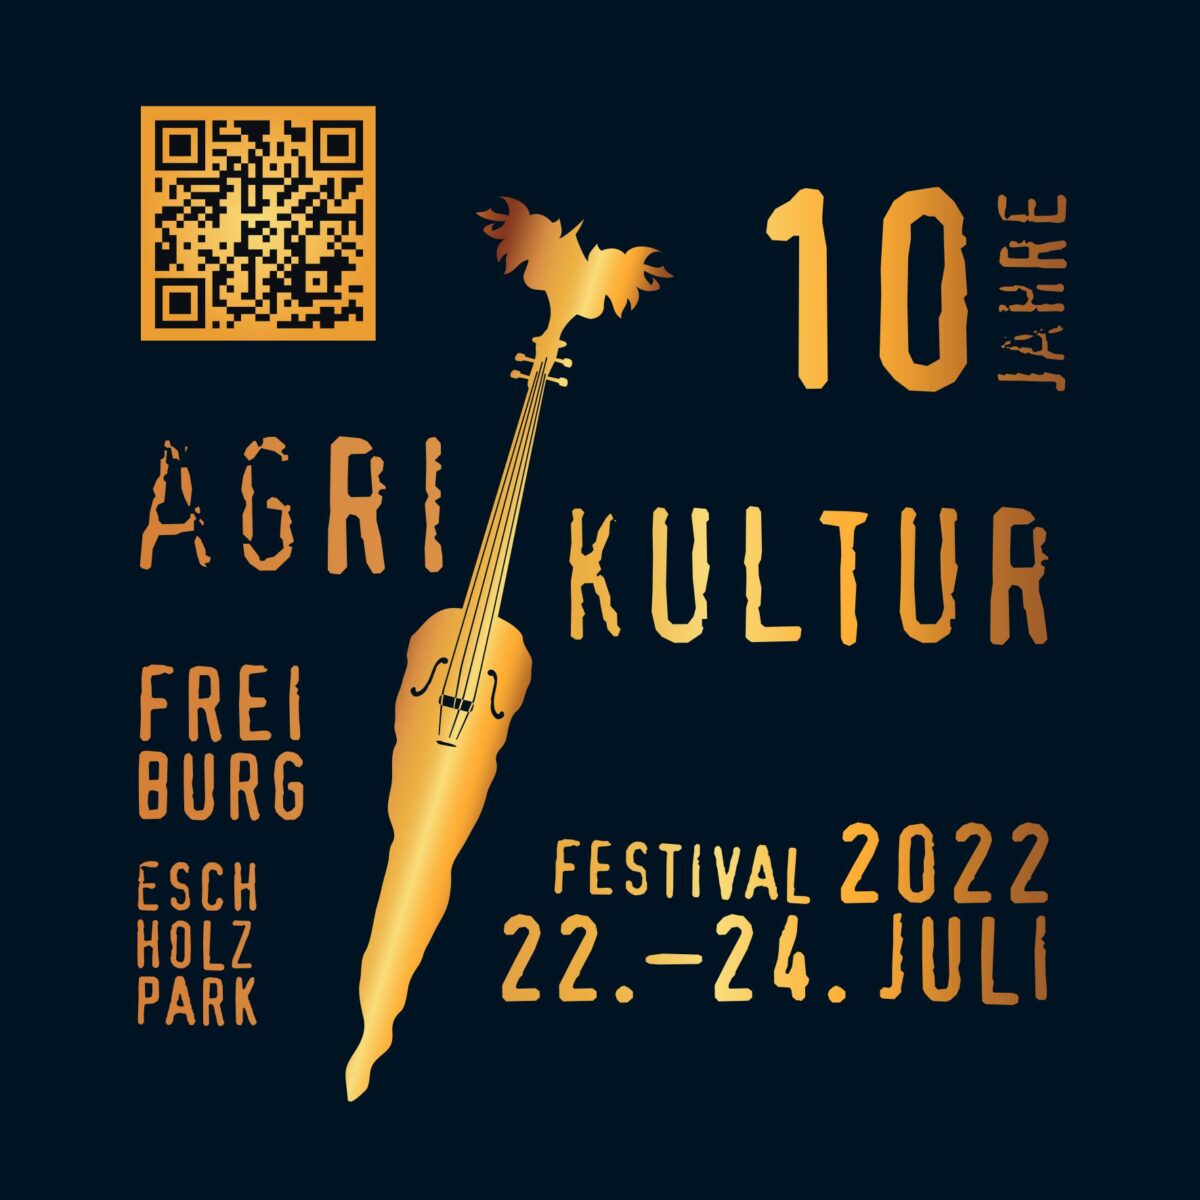 Bericht AgriKultur Festival 2022